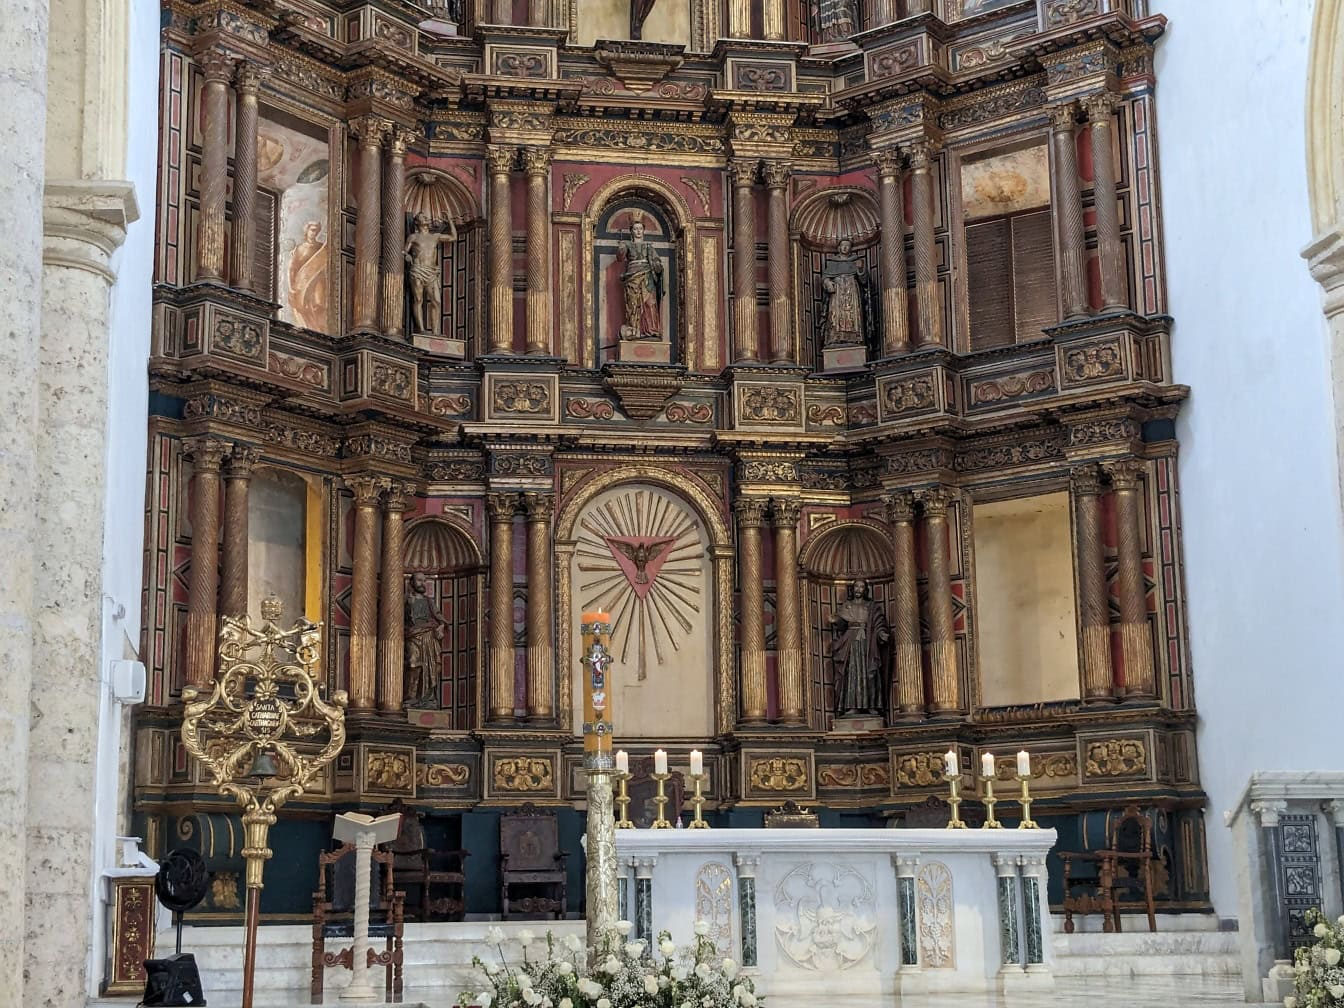 Altare decorato della basilica cattedrale metropolitana di Santa Caterina d’Alessandria conosciuta come cattedrale di Cartagena de Indias in Colombia